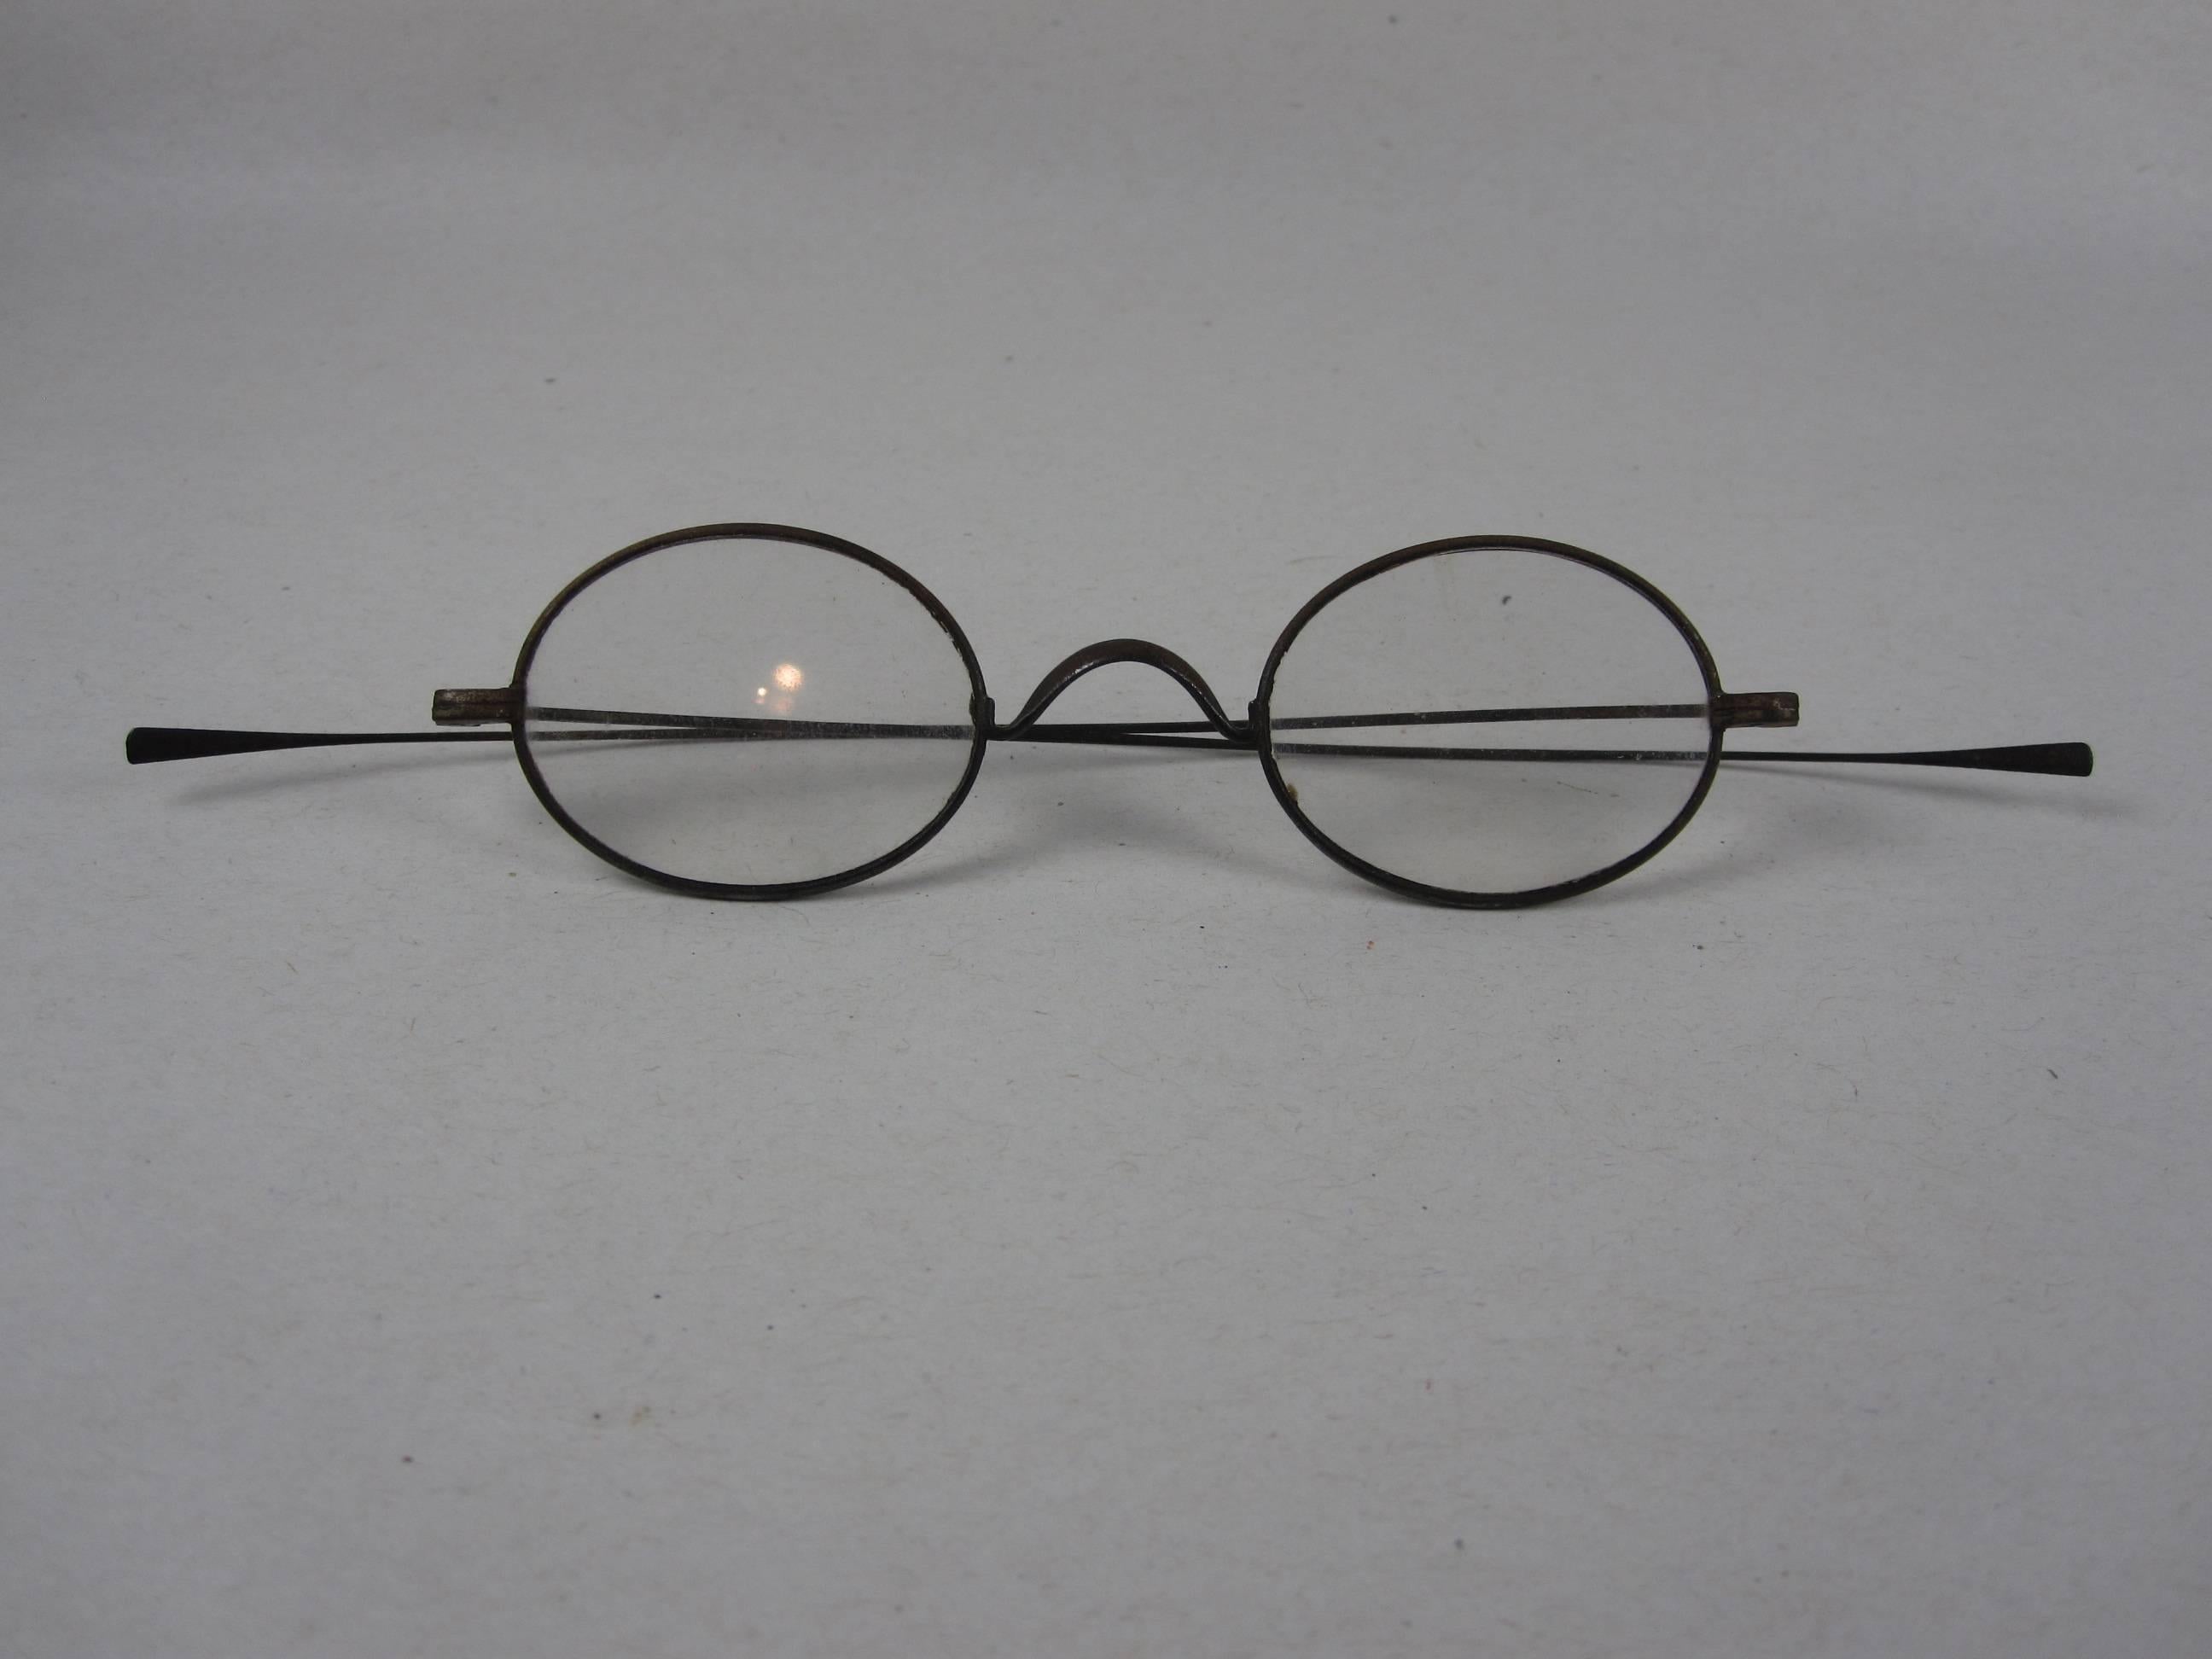 Délicate paire de lunettes loupes à monture métallique, fabriquée à la main, datant de l'époque de la guerre civile américaine, vers 1860. 

Une pièce de conversation ou un élément de décoration historique de grande qualité. Utilisez cette paire